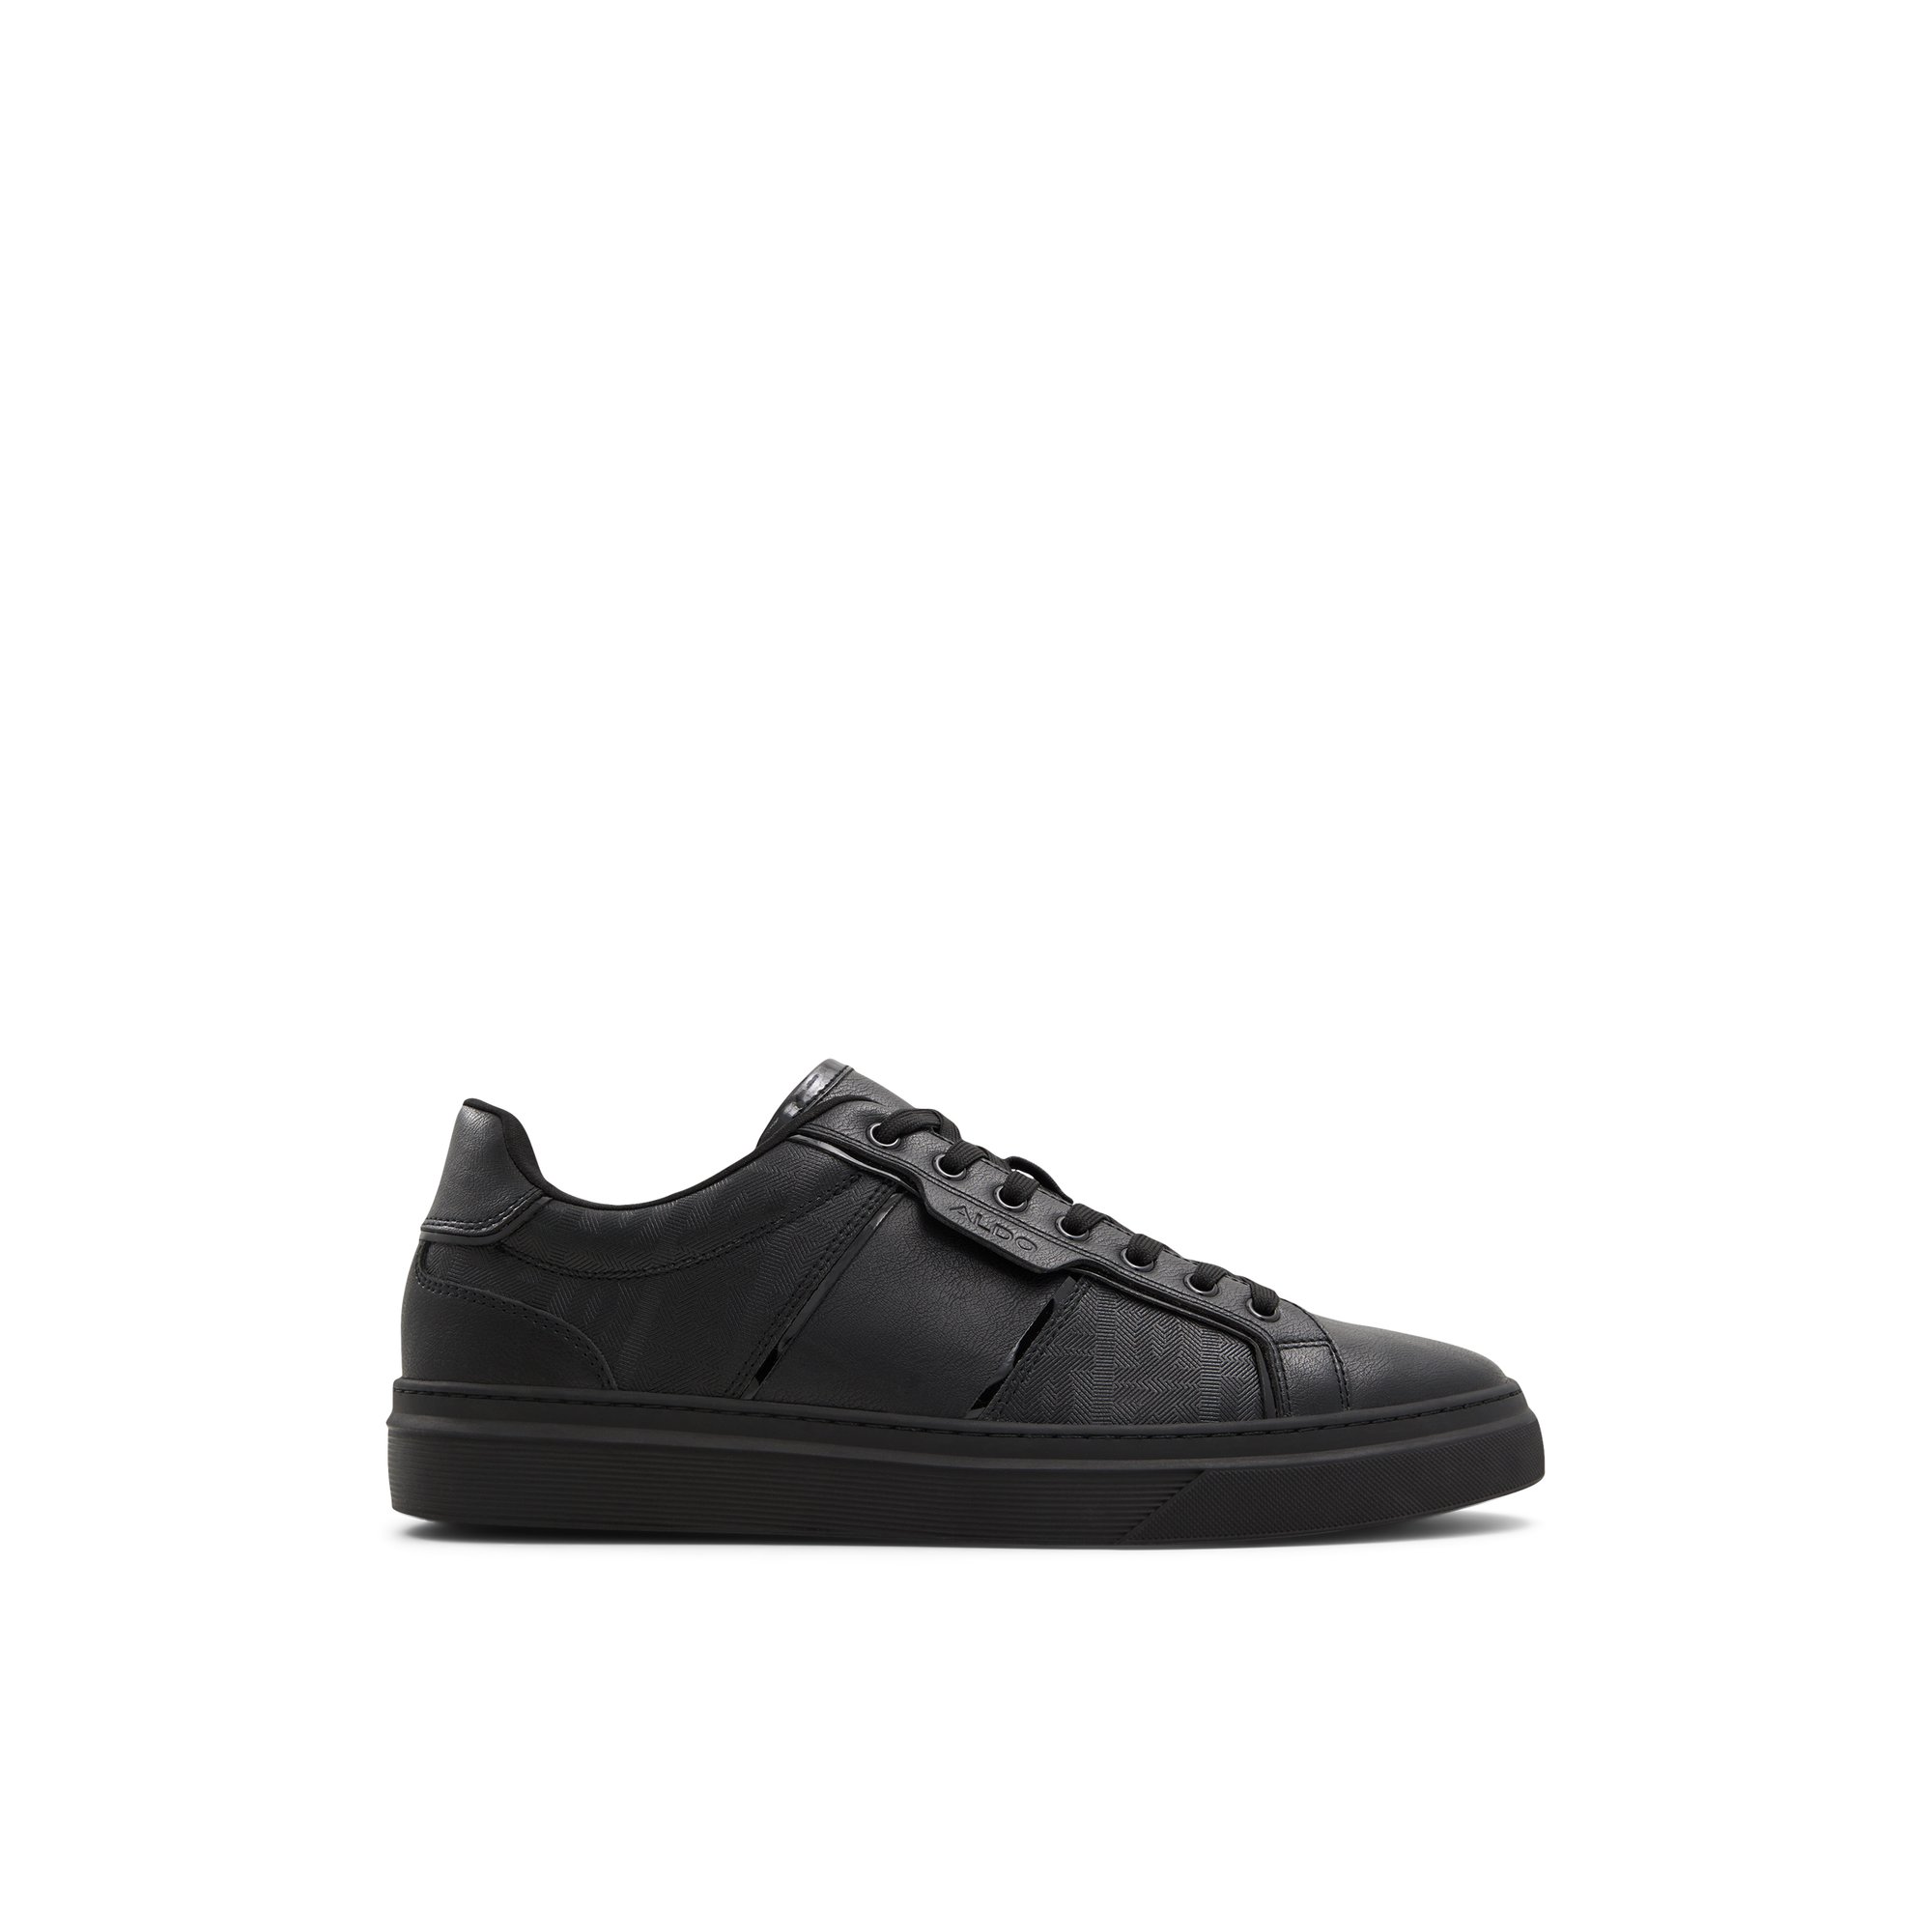 ALDO Courtline - Men's Low Top Sneakers - Black